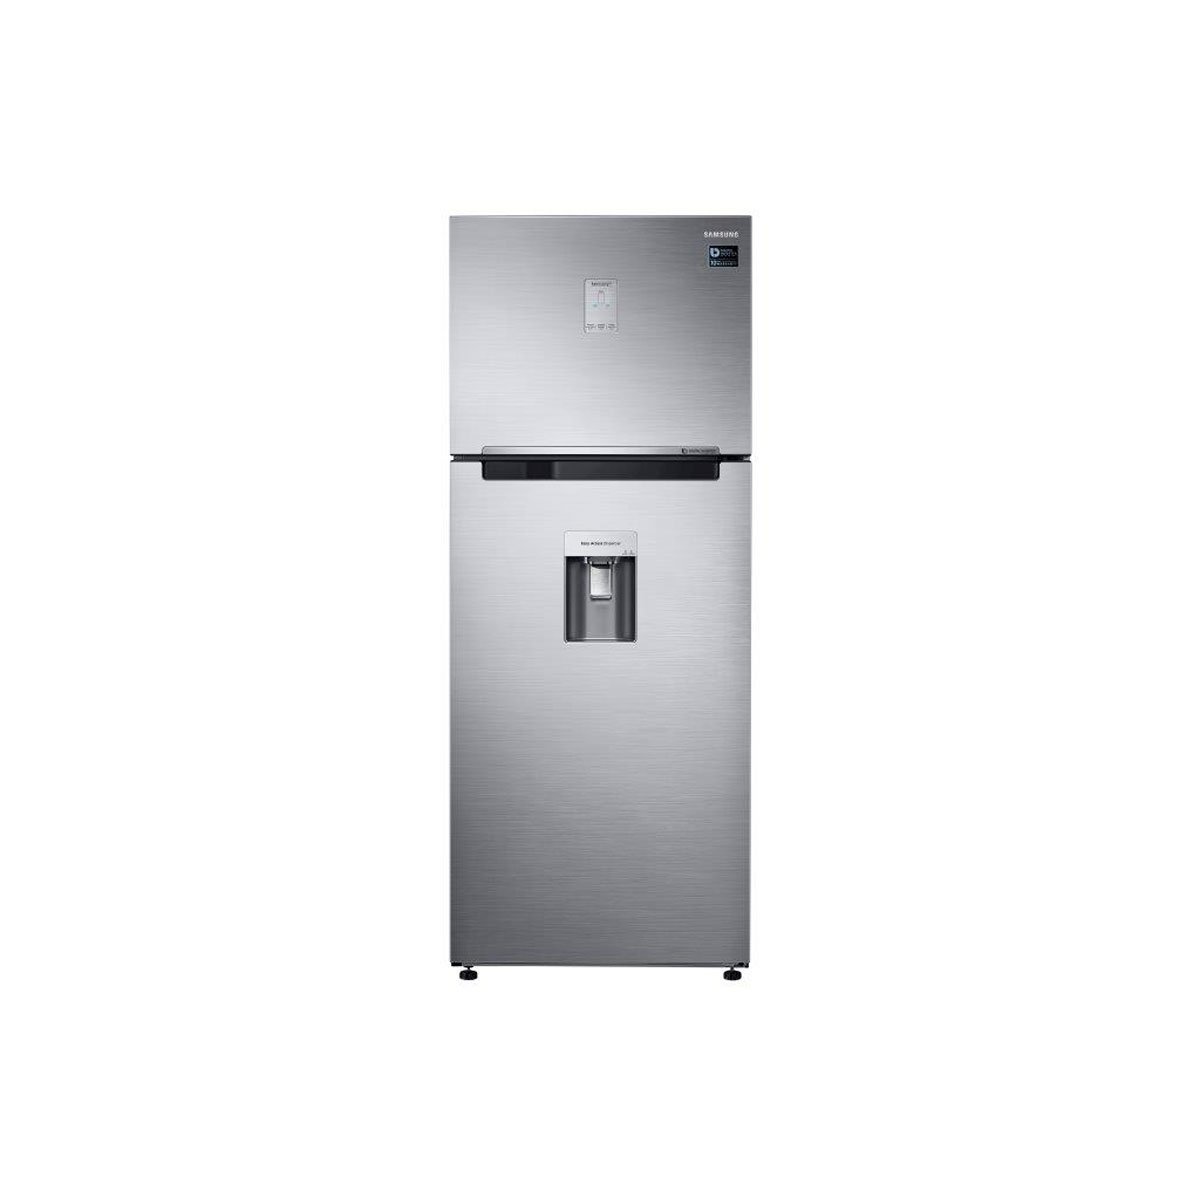 Refrigerador Samsung 2 Puertas 15 Pies Rt43K6630S8 Inox con Despachador